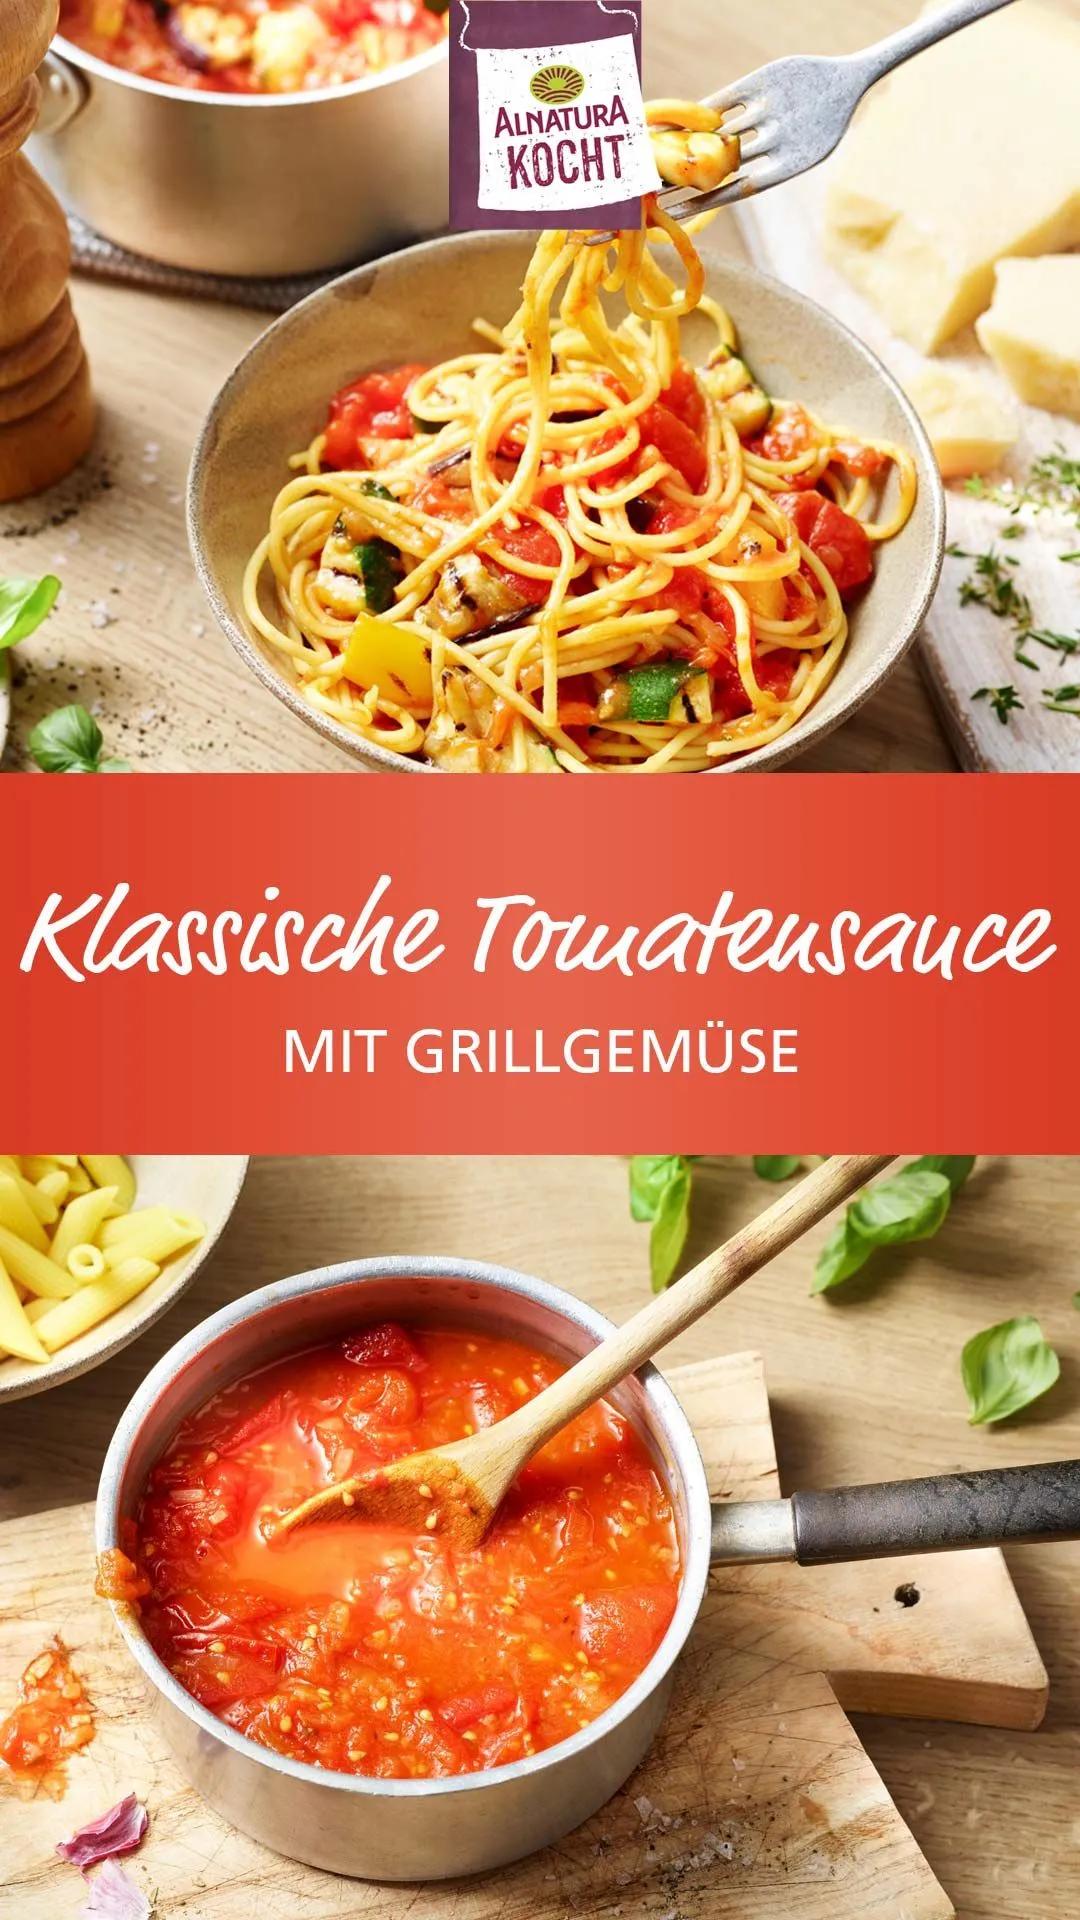 Klassische Tomatensauce mit Grillgemüse | Tomatensauce, Lebensmittel ...